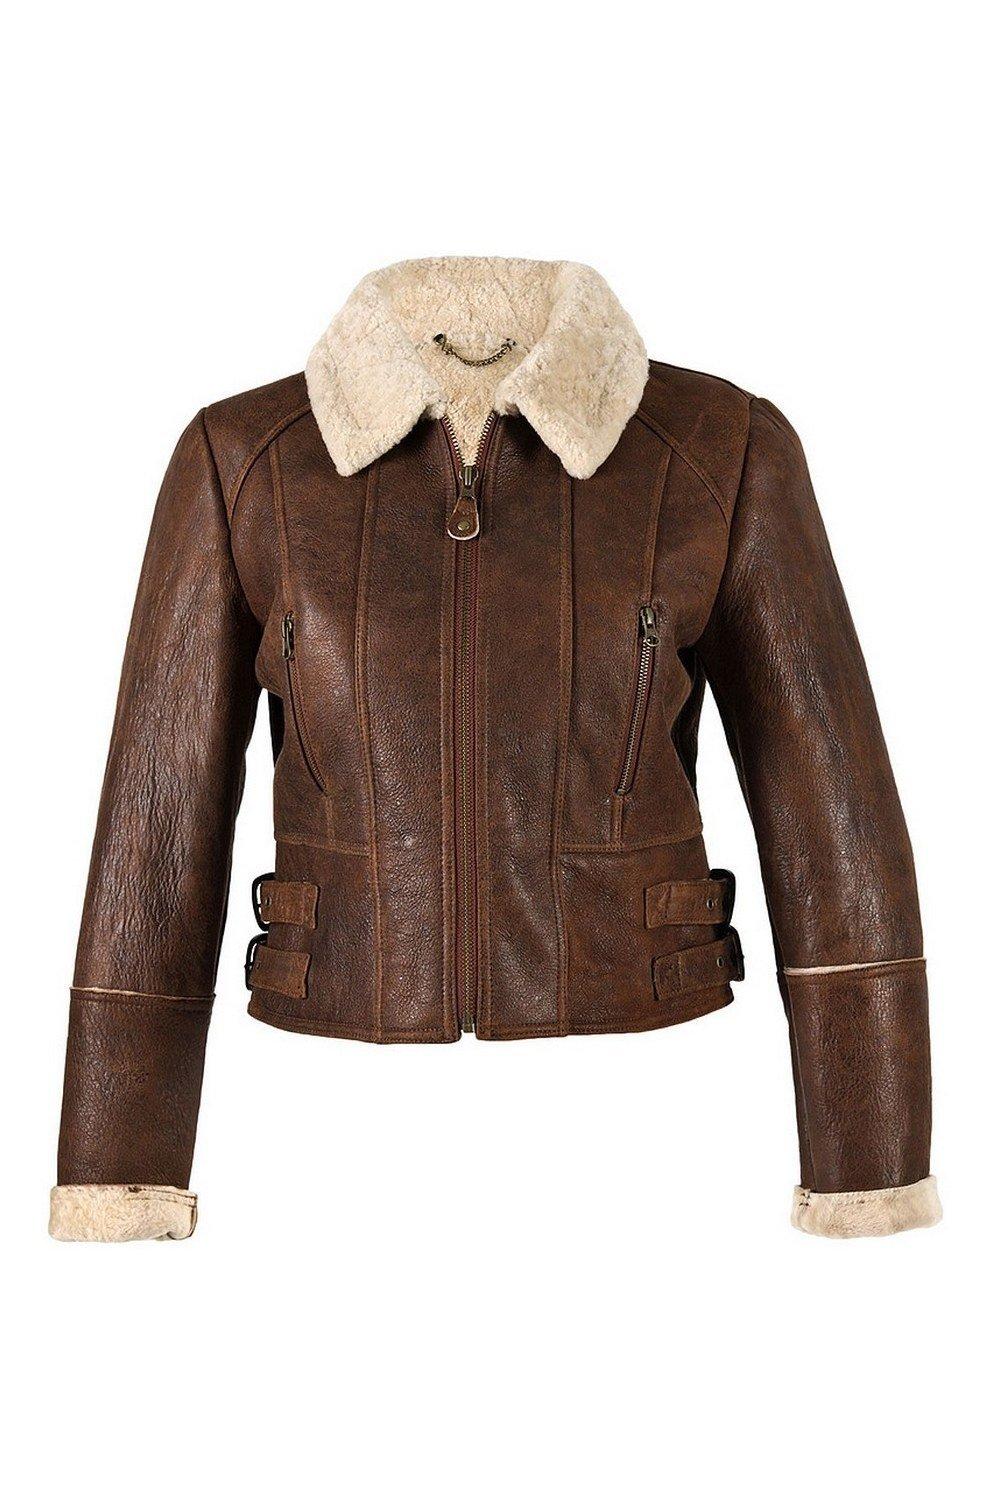 Укороченная летная куртка Ella из овчины Eastern Counties Leather, коричневый женская короткая кожаная куртка модная весенне осенняя куртка черного и красного цвета женская весна женская куртка женская куртка